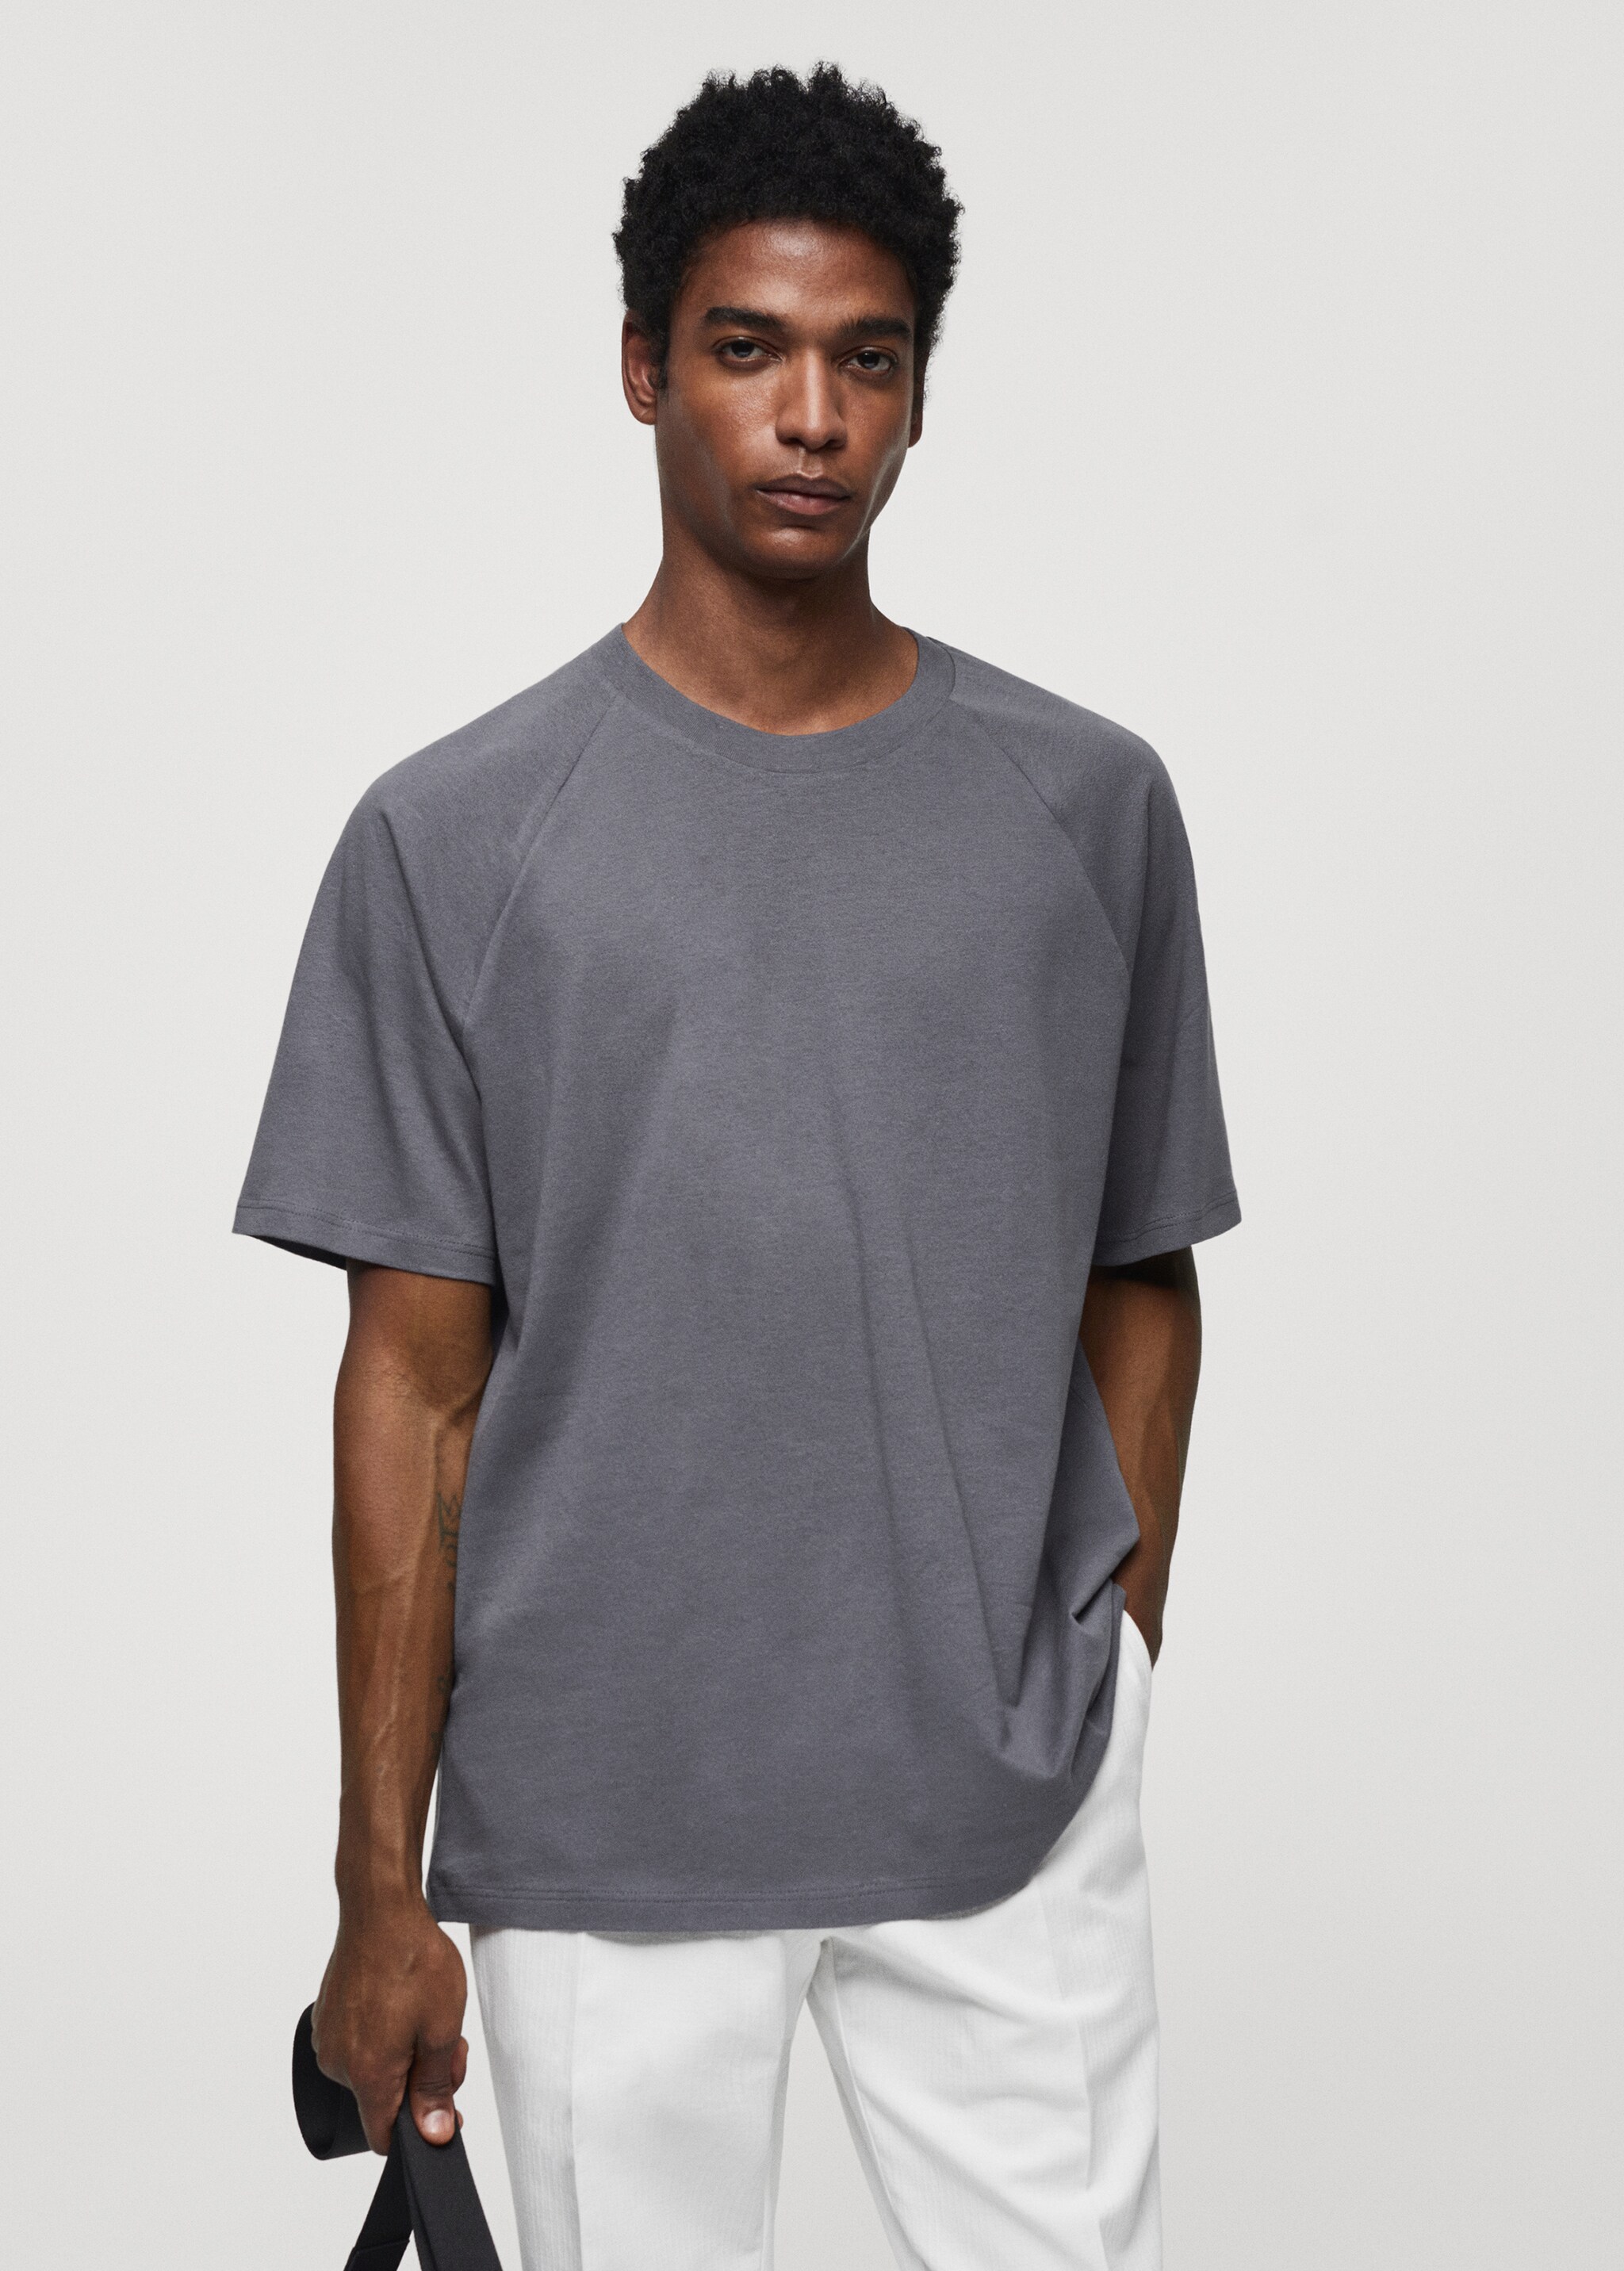 T-shirt de algodão relaxed fit - Plano médio